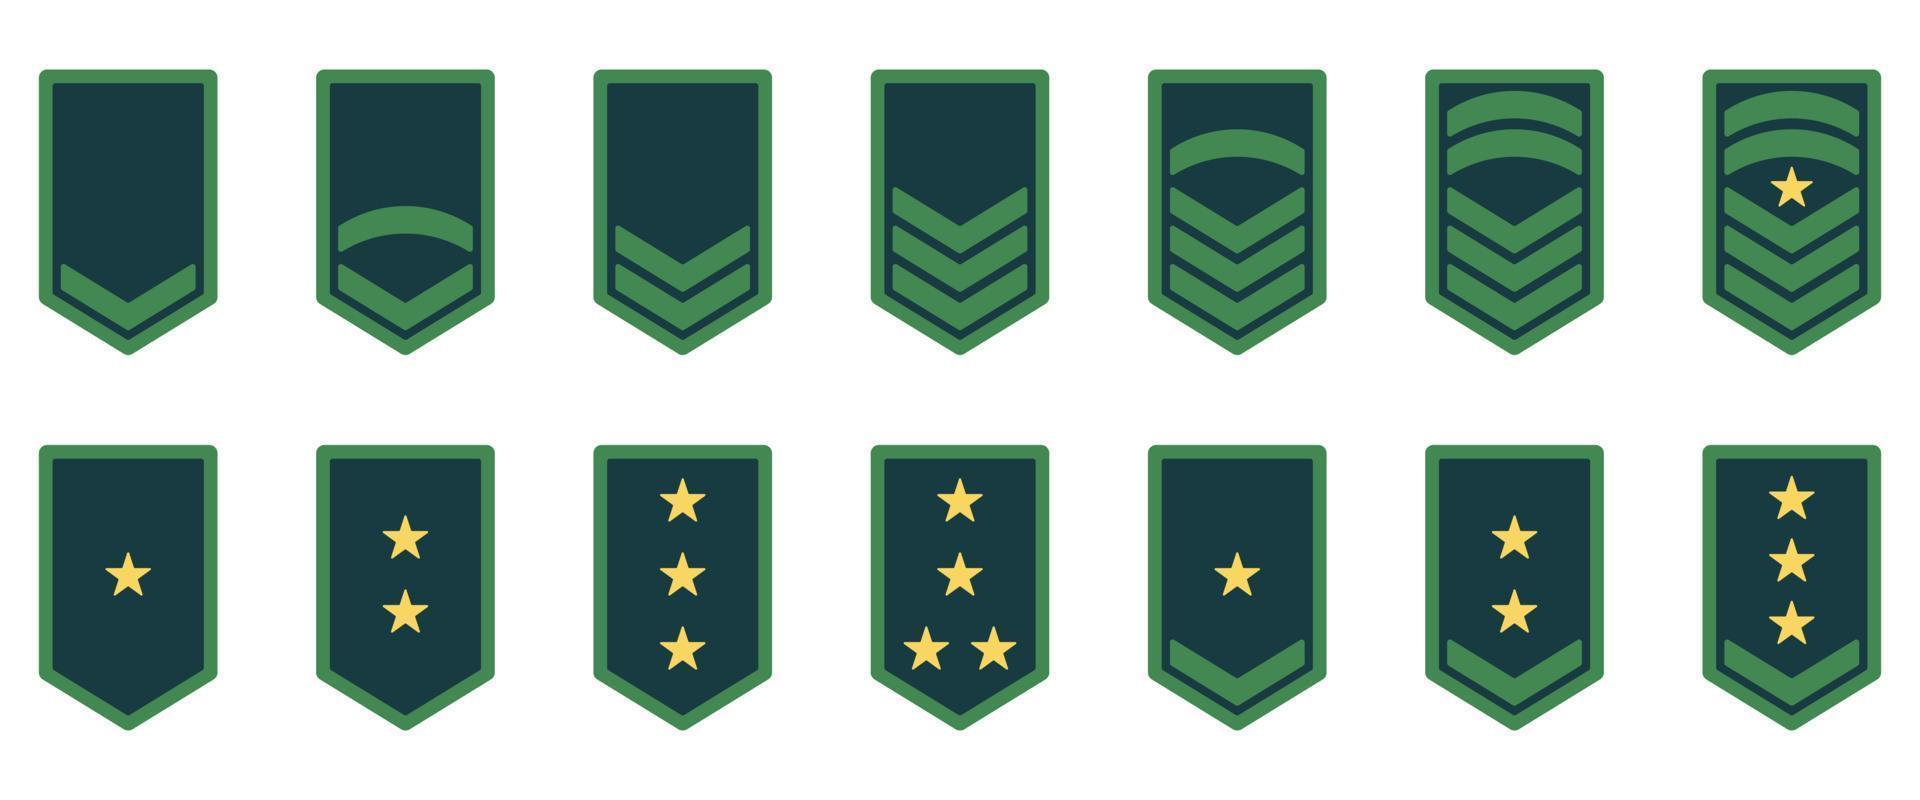 Armee-Rang-Symbol. Militärabzeichen grünes Symbol. Chevron gelbes Stern- und Streifenlogo. Soldat Sergeant, Major, Offizier, General, Leutnant, Oberst Emblem. isolierte Vektorillustration. vektor